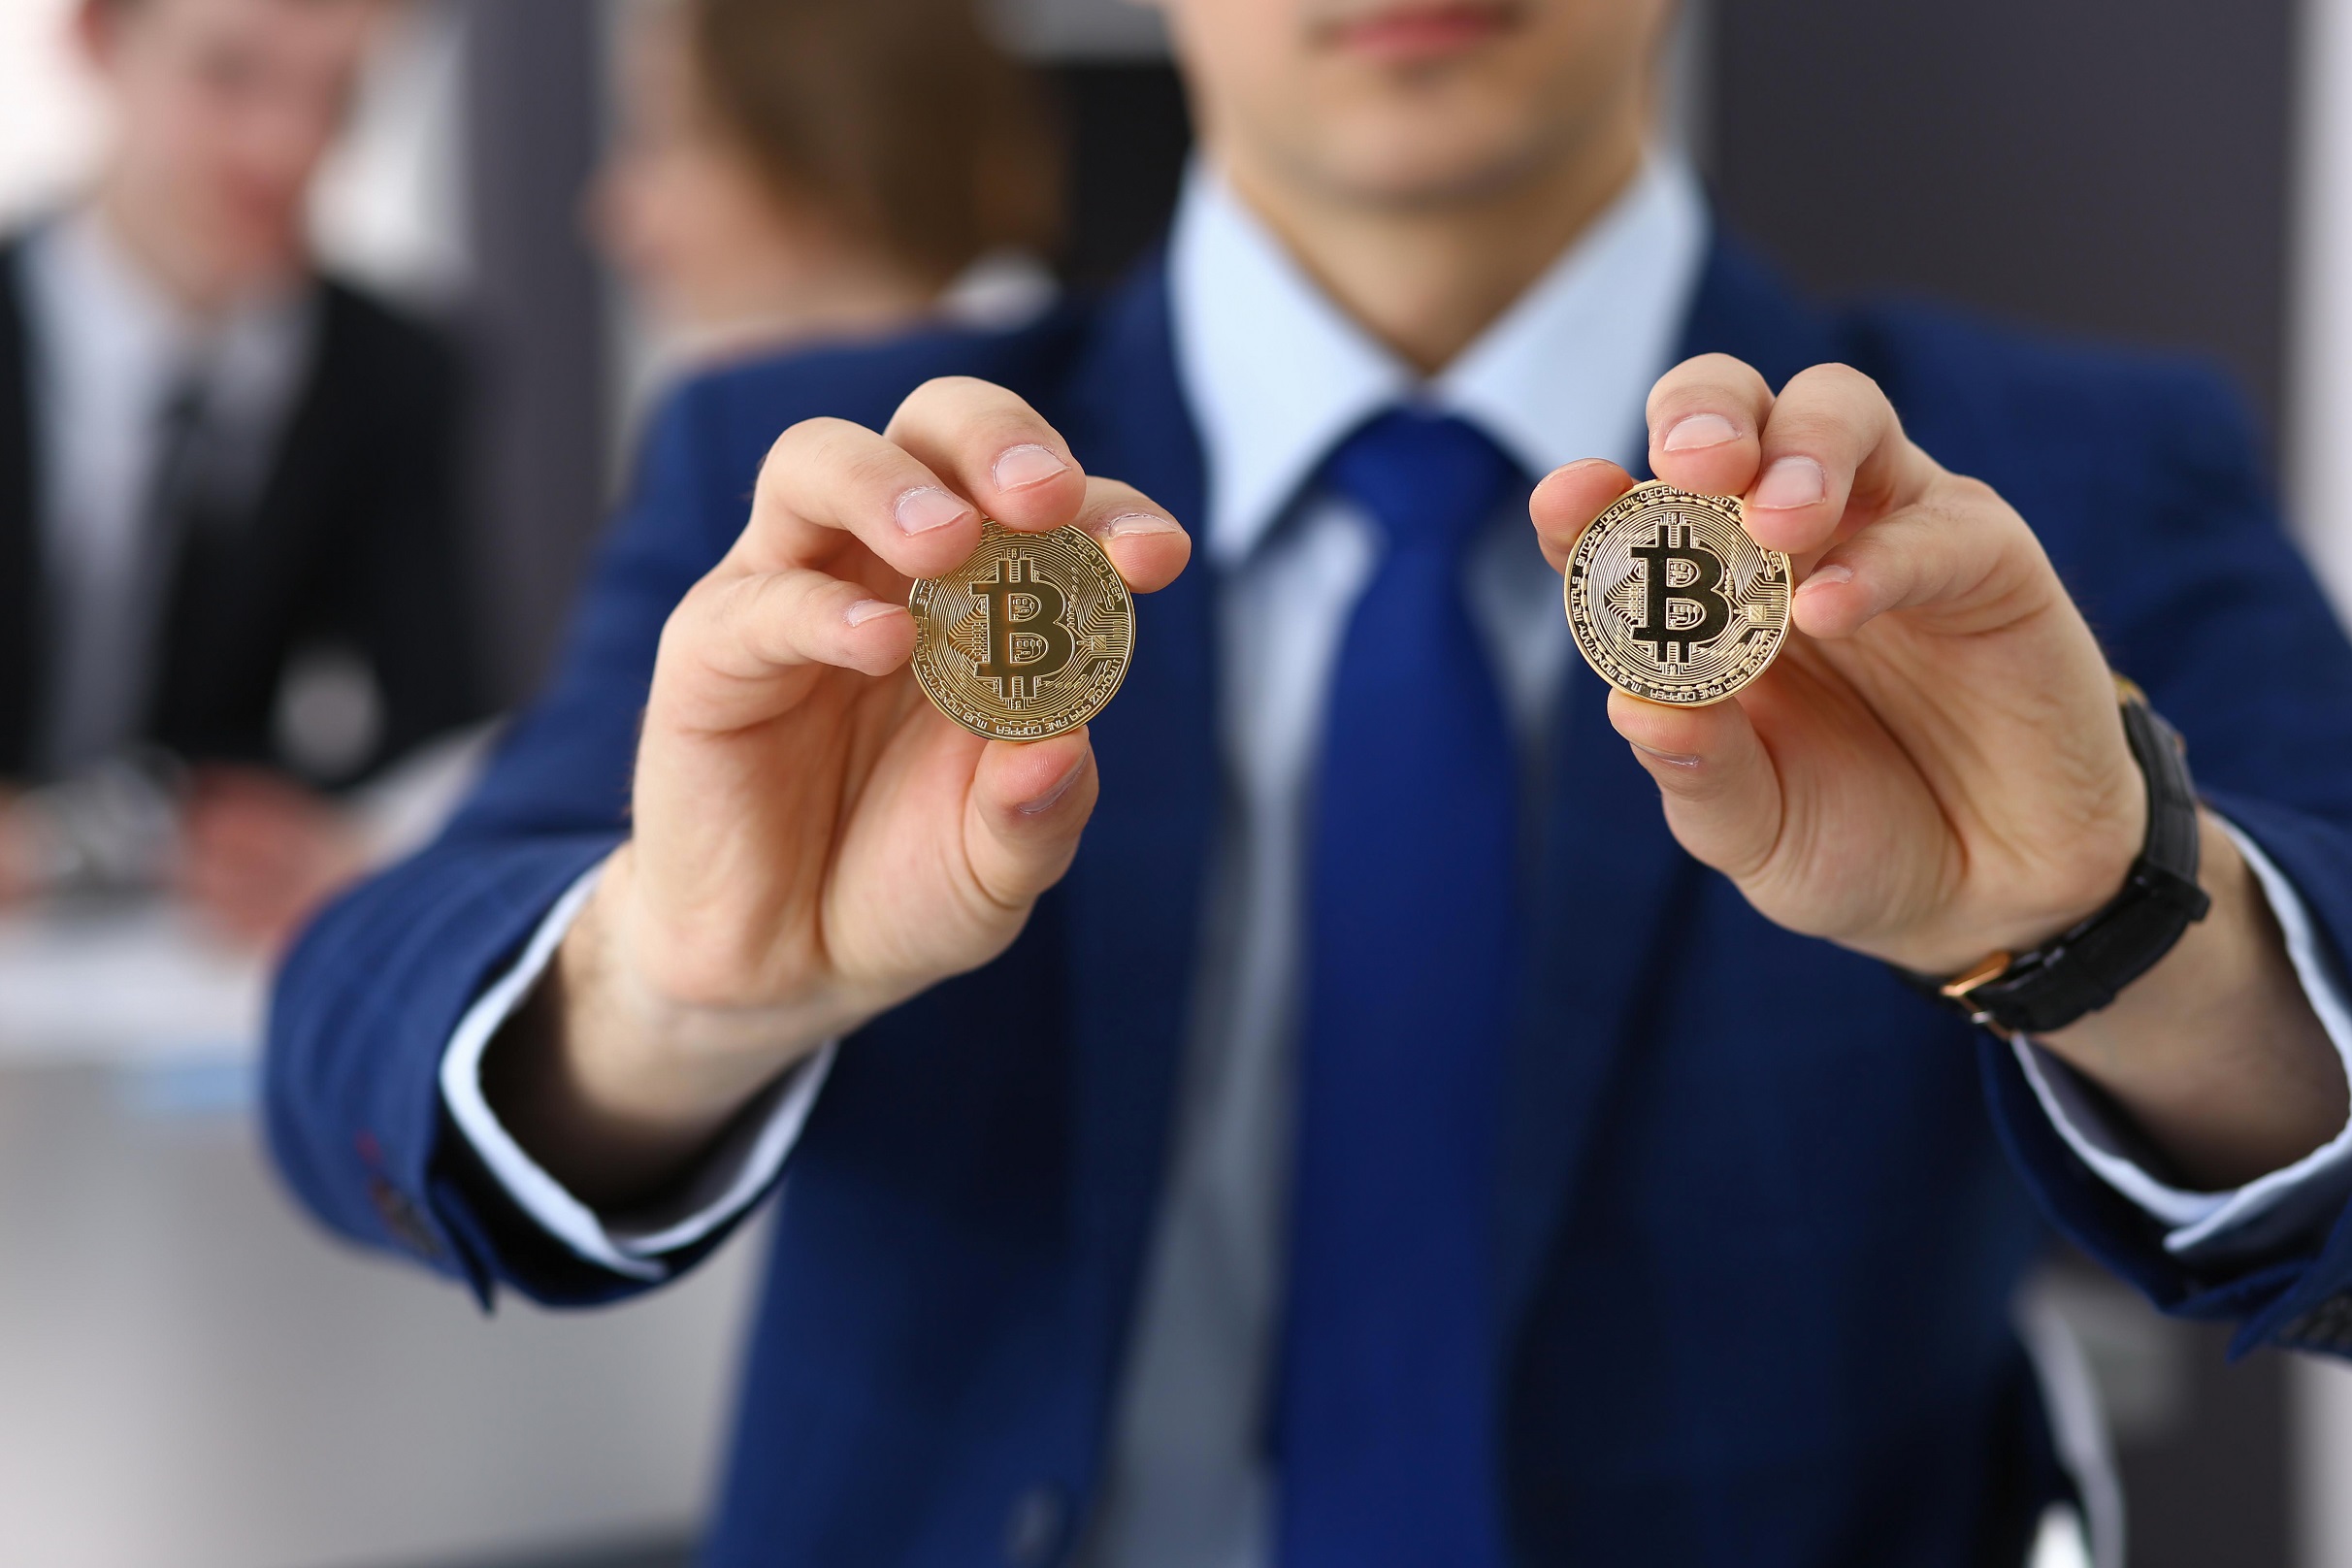 homem segurando duas moedas de bitcoin